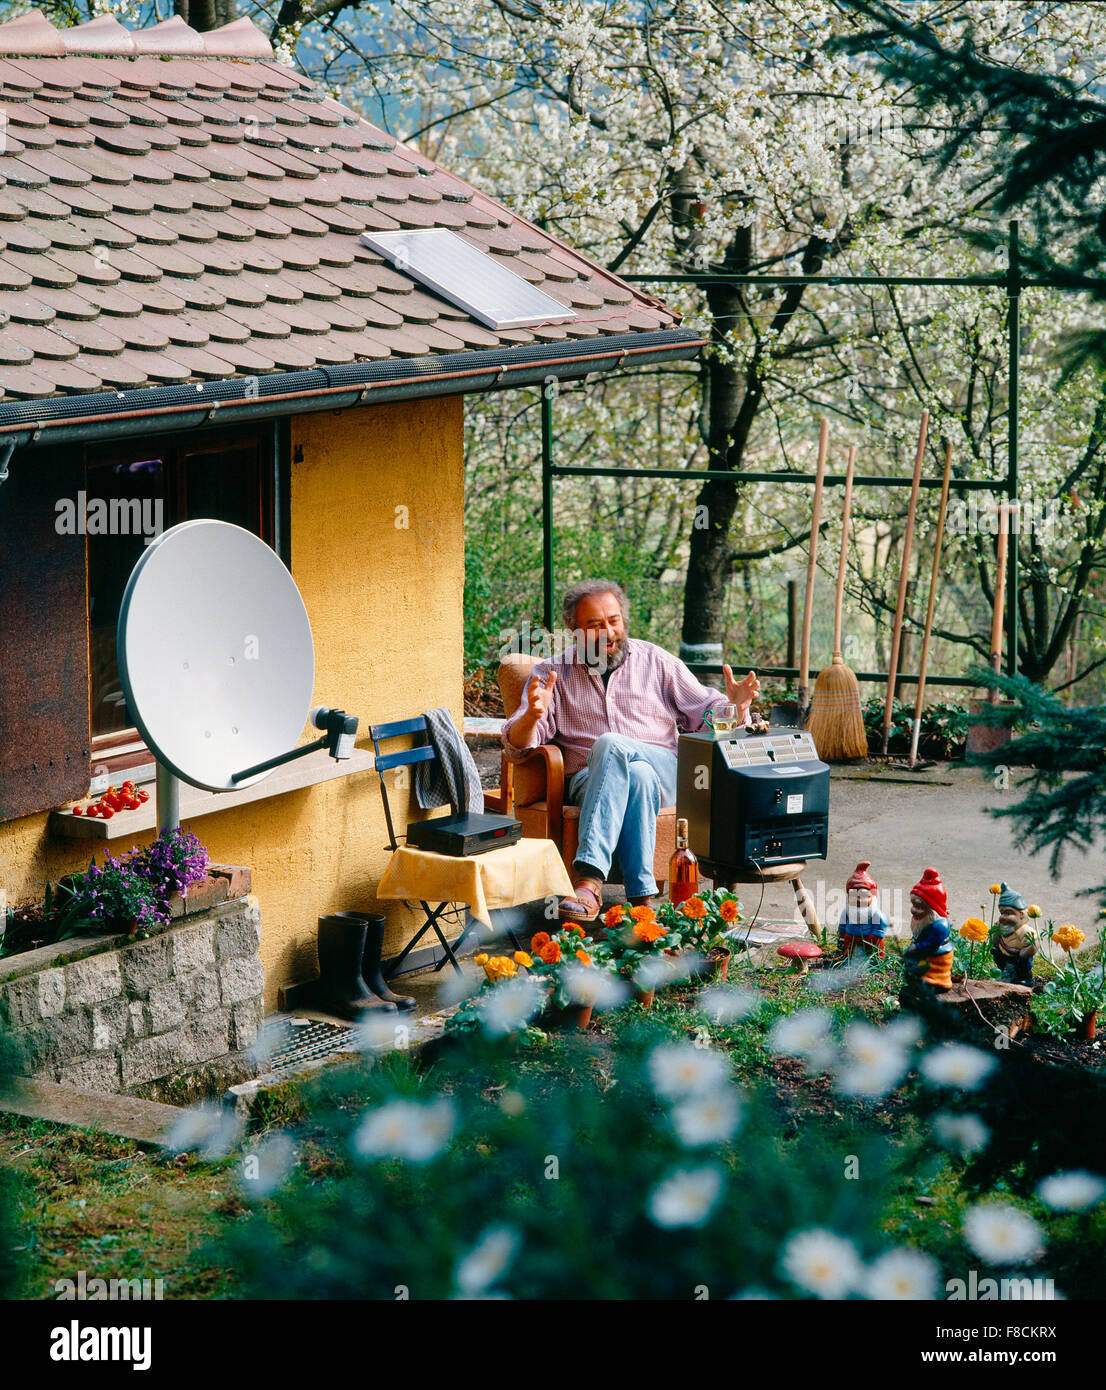 Schrebergaertner Beim Fernsehen Im Garten Mit Satelittenschuessel Gärtner, Satelliten-Fernsehen in seinem Garten Stockfoto